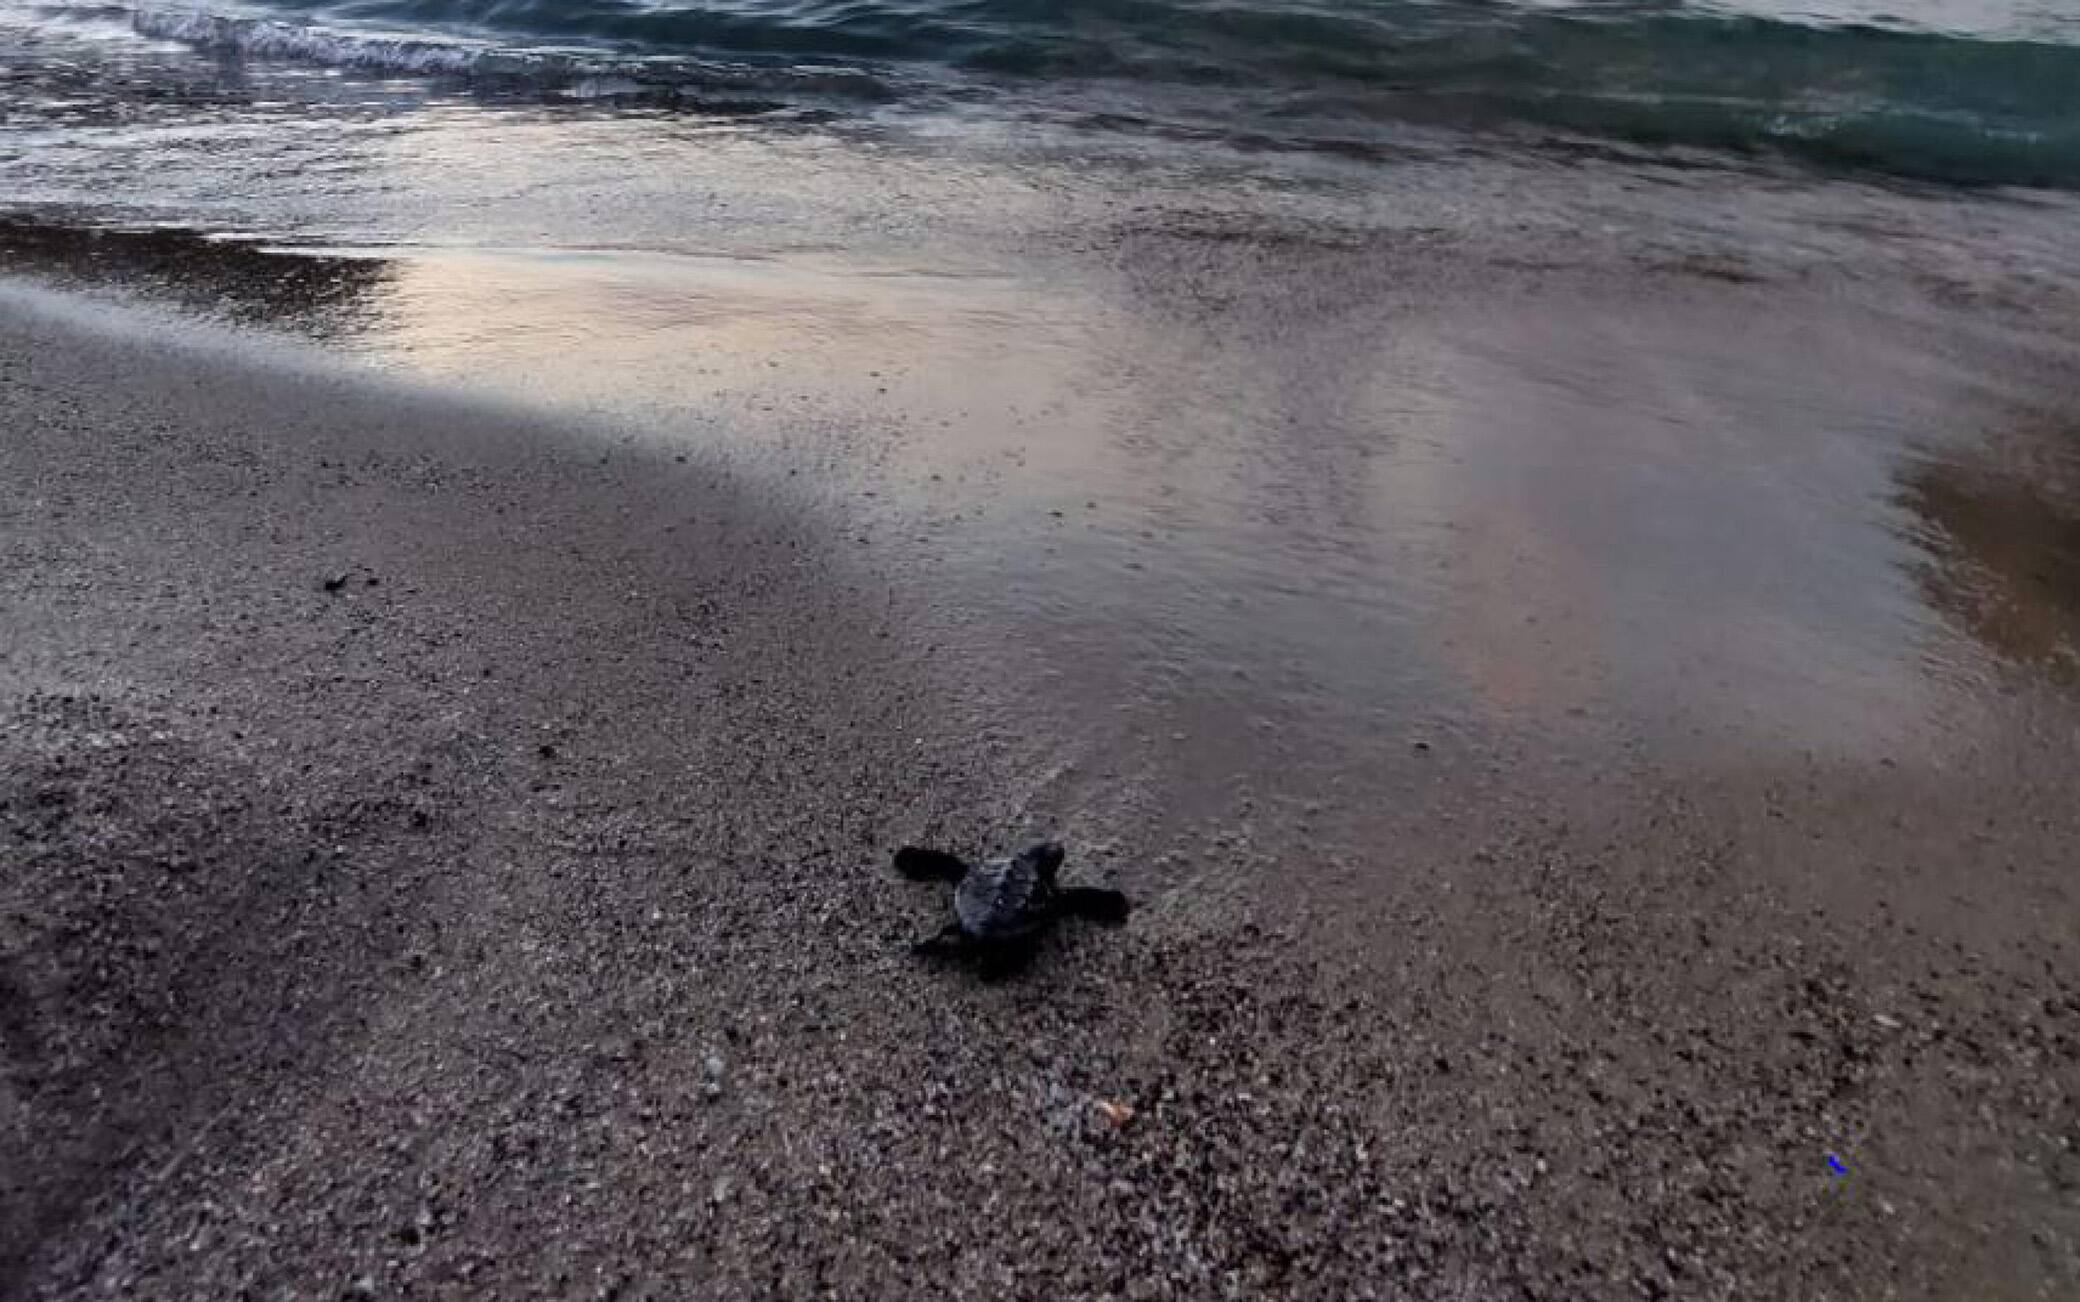 In una foto fornita da Regno di Net alcune della circa sessanta tartarughe caretta nate sulla spiaggia ischitana di San Montano, Ischia, 31 luglio 2022. Altre potrebbero nascerne ancora oggi dal nido in cui la madre
dovrebbe aver deposto le uova circa quaranta giorni fa.
Nel pomeriggio di ieri sull'arenile della baia famosa per la
spiaggia con l'acqua bassa i bagnanti si sono accorti che alcune
tartarughine erano emerse dalla sabbia e cercavano la strada
verso il mare. ANSA  +++ HO NO SALES - DITORIAL USE ONLY +++ o +++ ANSA PROVIDES ACCESS TO THIS HANDOUT PHOTO TO BE USED SOLELY TO ILLUSTRATE NEWS REPORTING OR COMMENTARY ON THE FACTS OR EVENTS DEPICTED IN THIS IMAGE; NO ARCHIVING; NO LICENSING +++